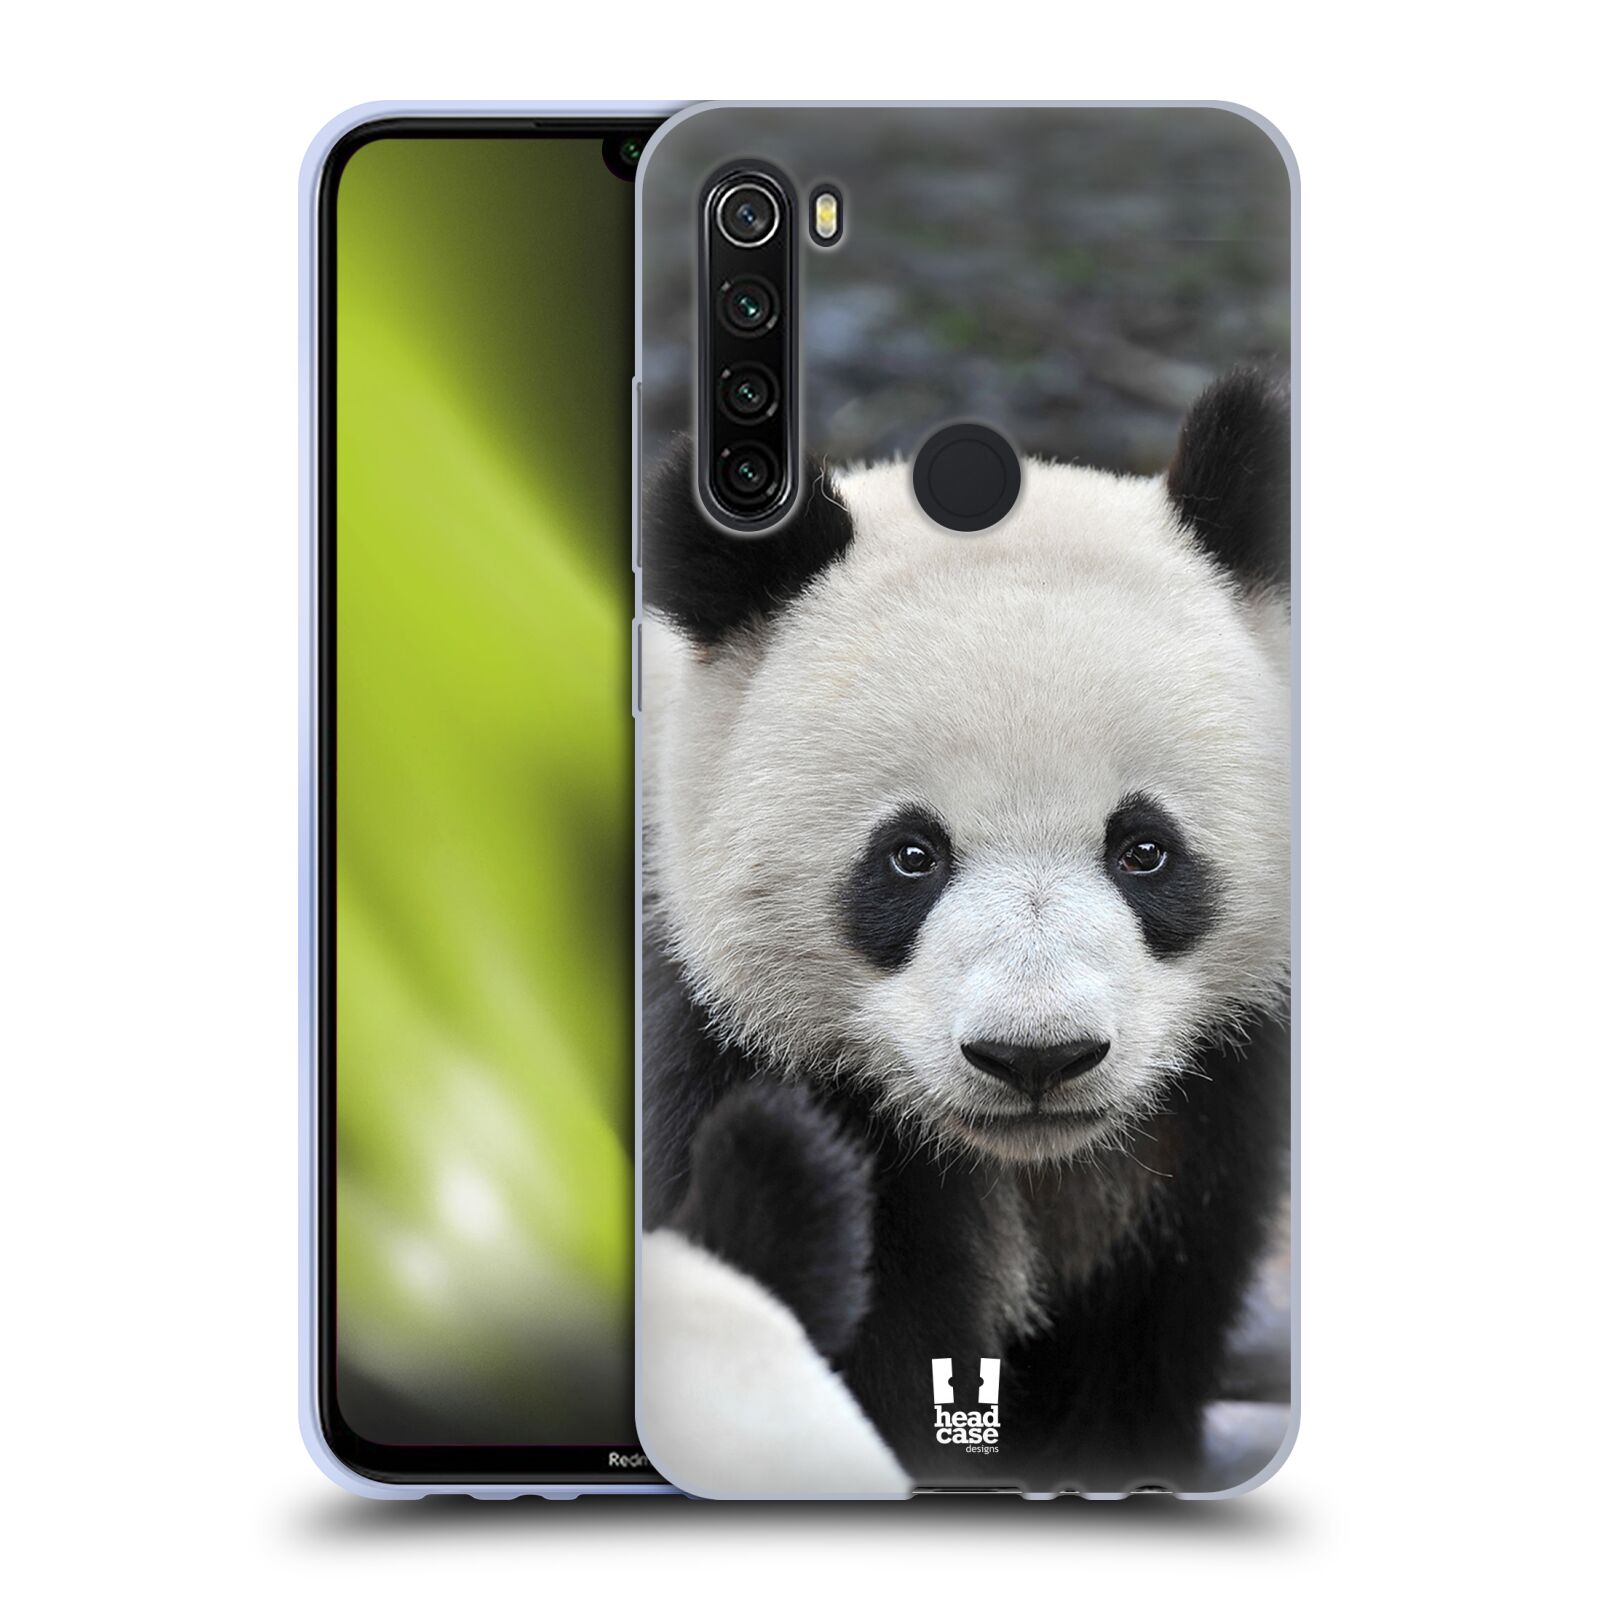 Plastový obal HEAD CASE na mobil Xiaomi Redmi Note 8T vzor Divočina, Divoký život a zvířata foto MEDVĚD PANDA